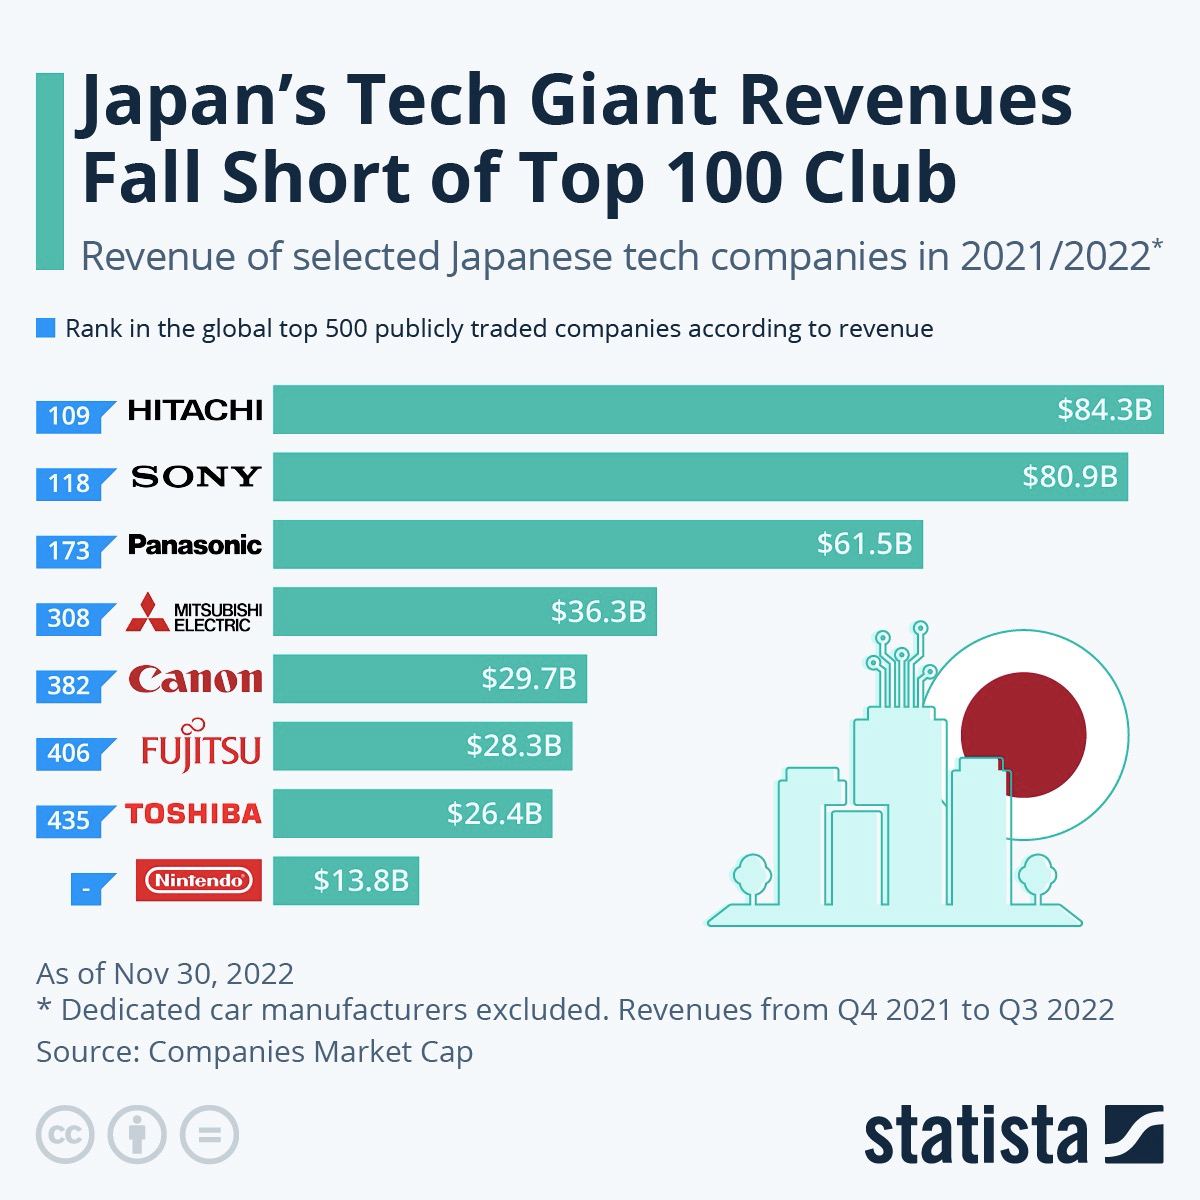 Япония — одна из немногих стран, которая может похвастаться целым набором технологических гигантов